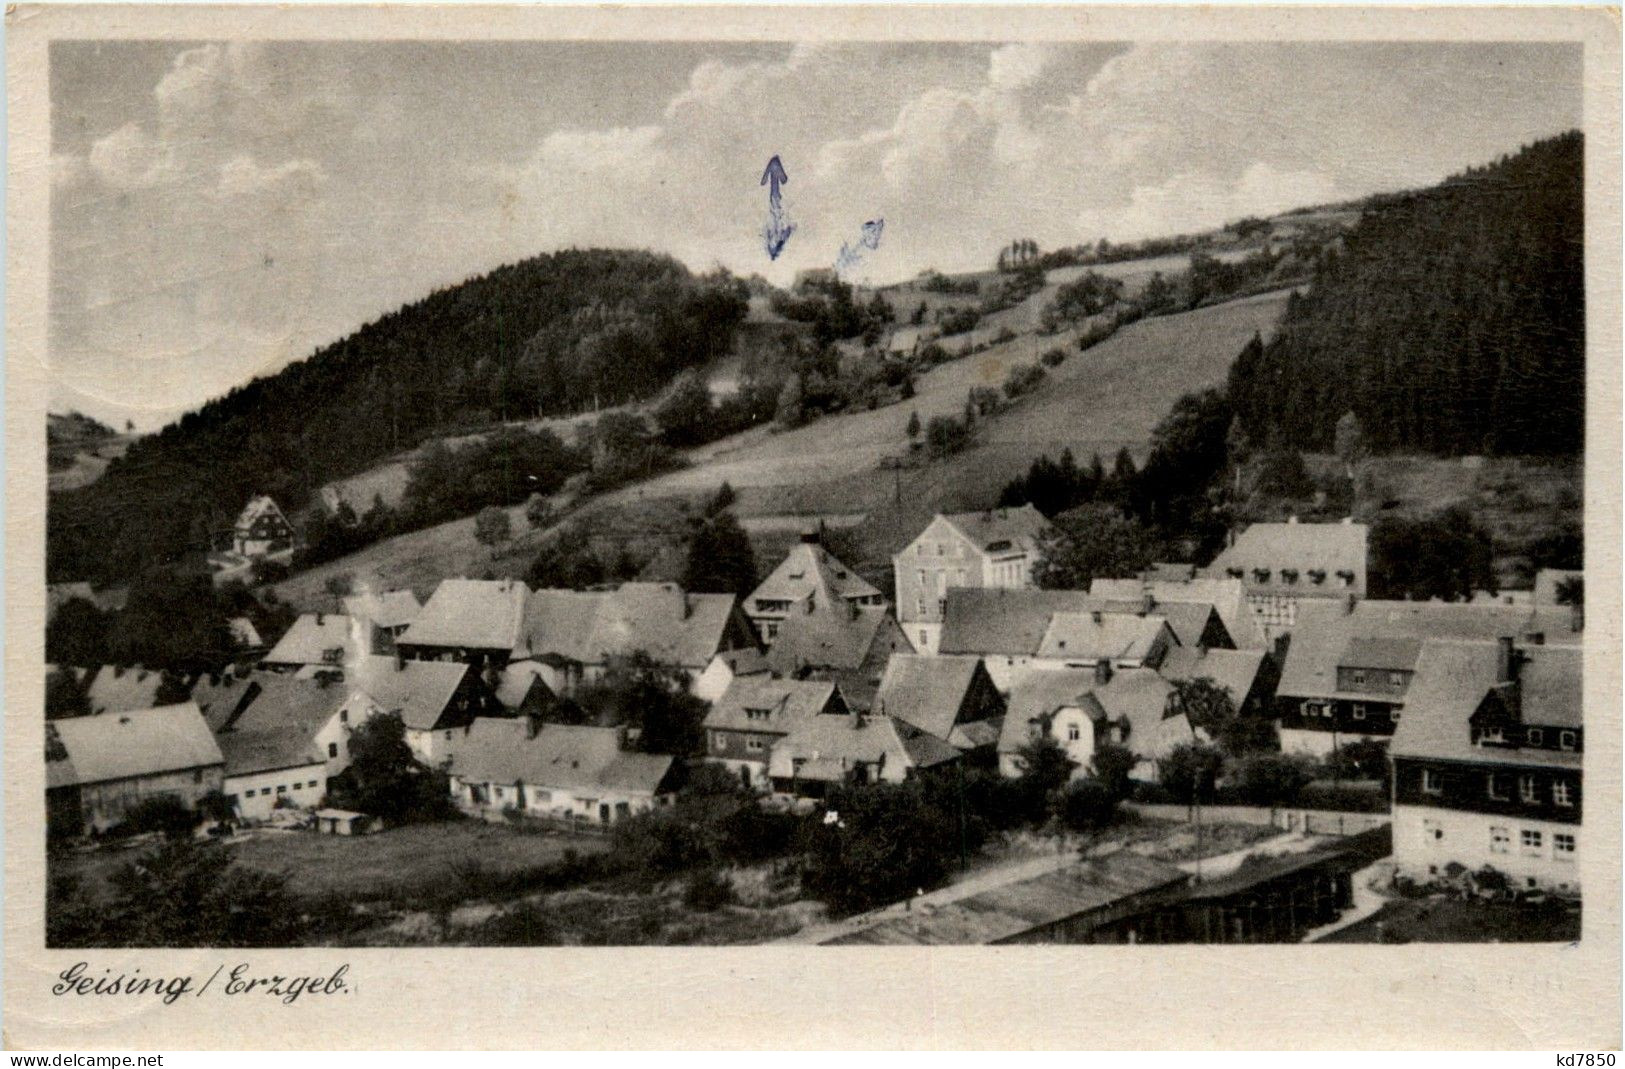 Geising - Altenberg